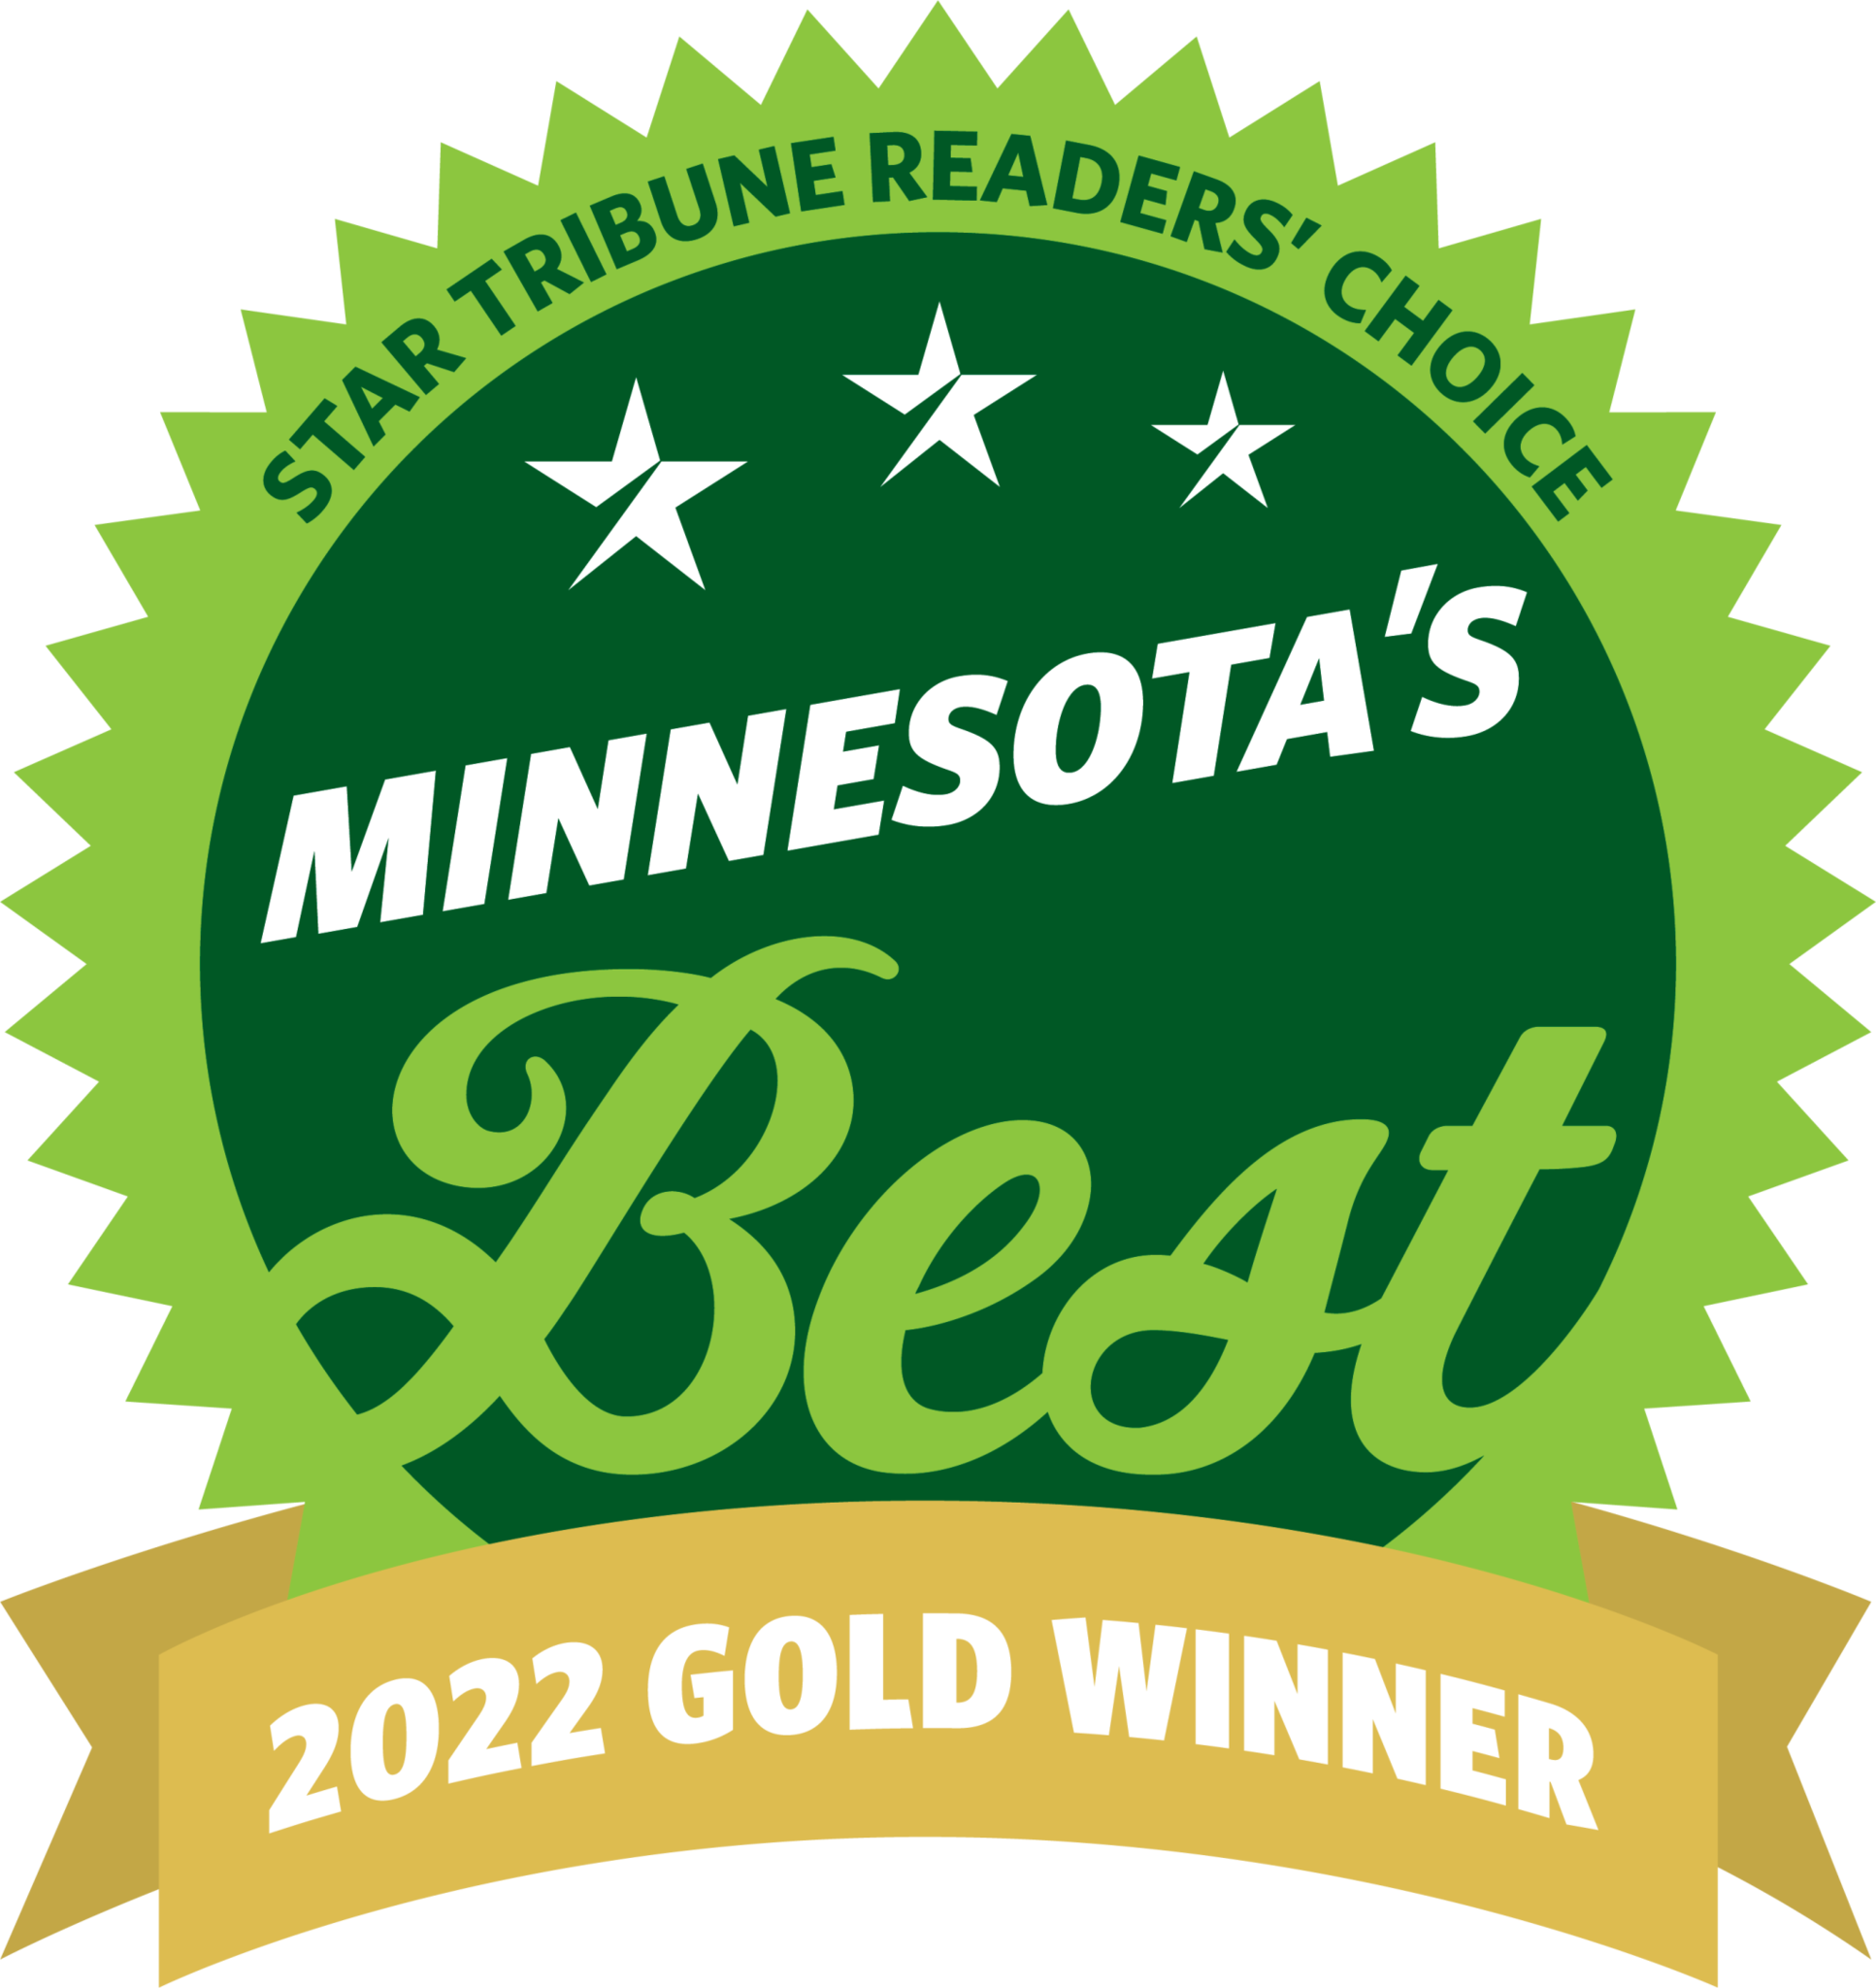 Minnesota's Best Gold WInner Award for 2022